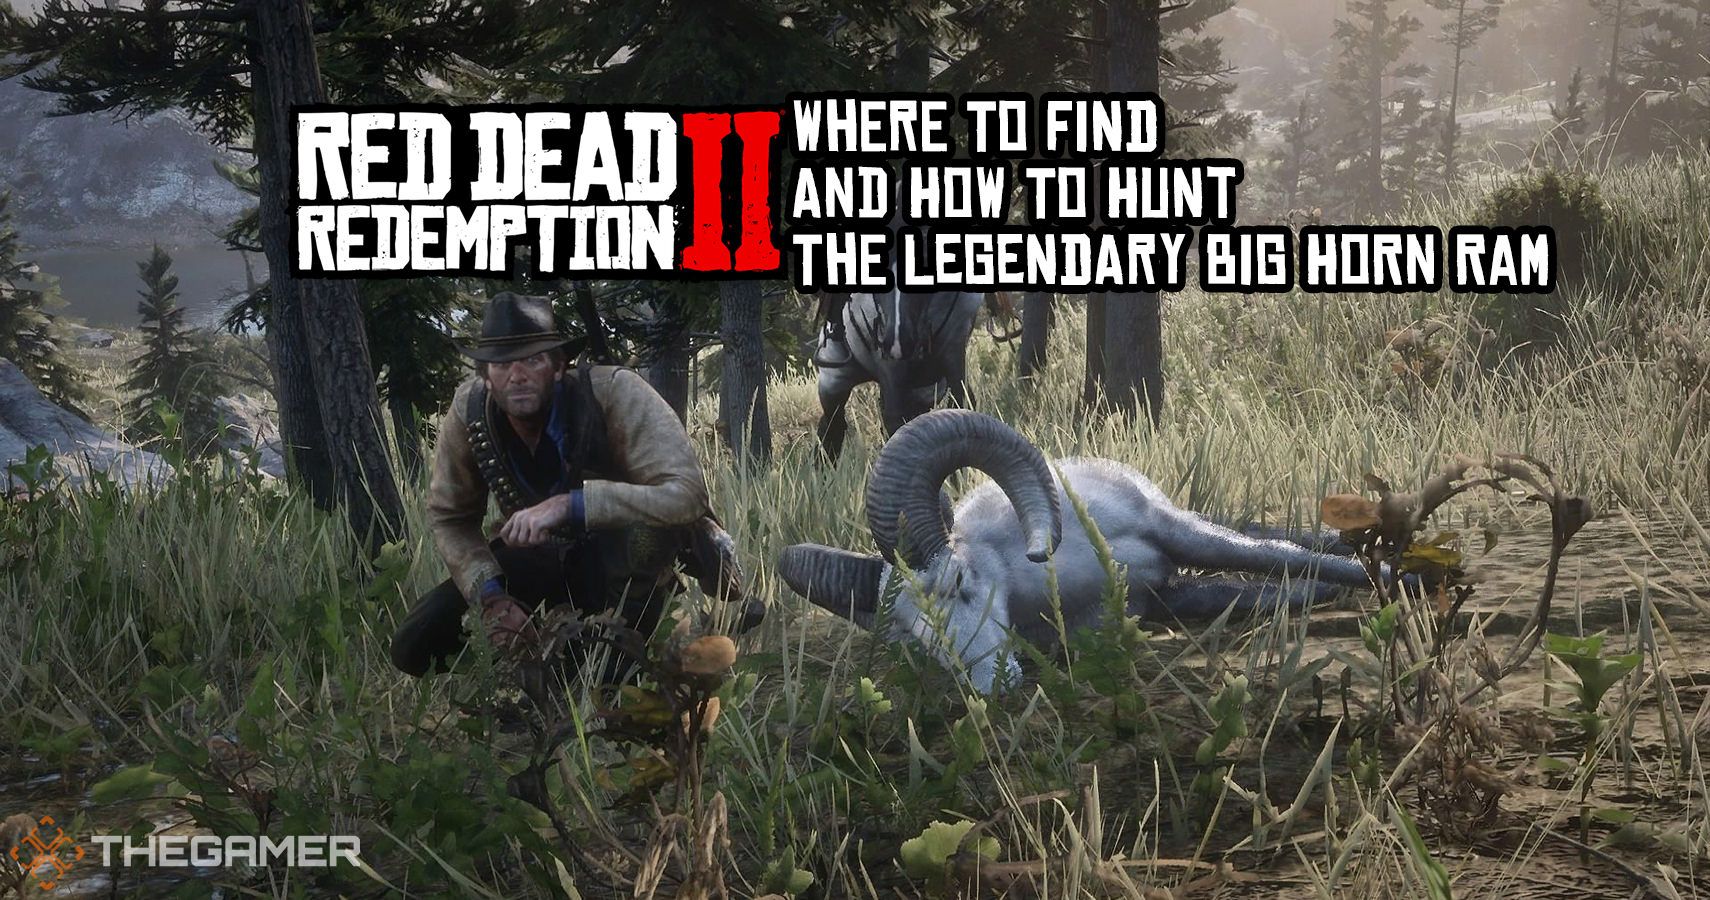 affældige Droop Grader celsius Red Dead Redemption 2: Where To Find And How To Hunt The Legendary Big Horn  Ram